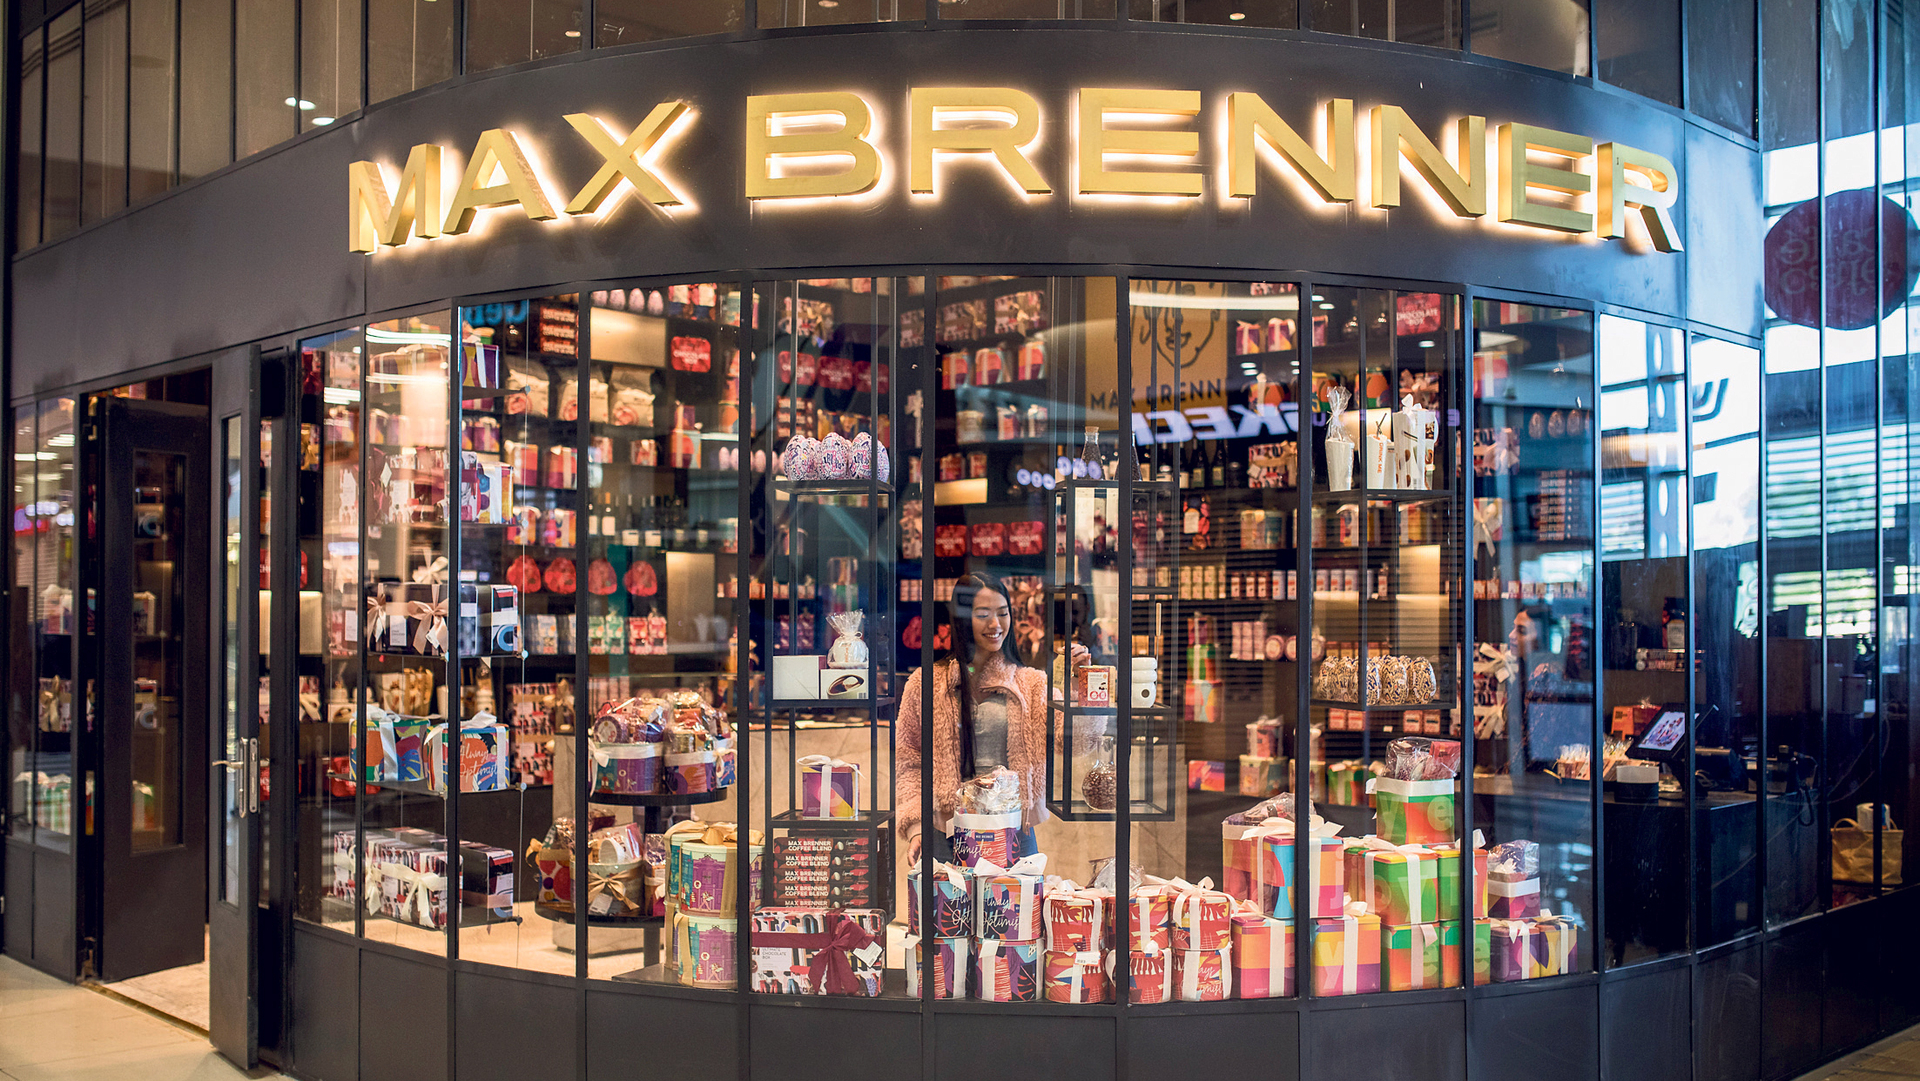 חנות שוקולד חדשה של מקס ברנר בבאר שבע